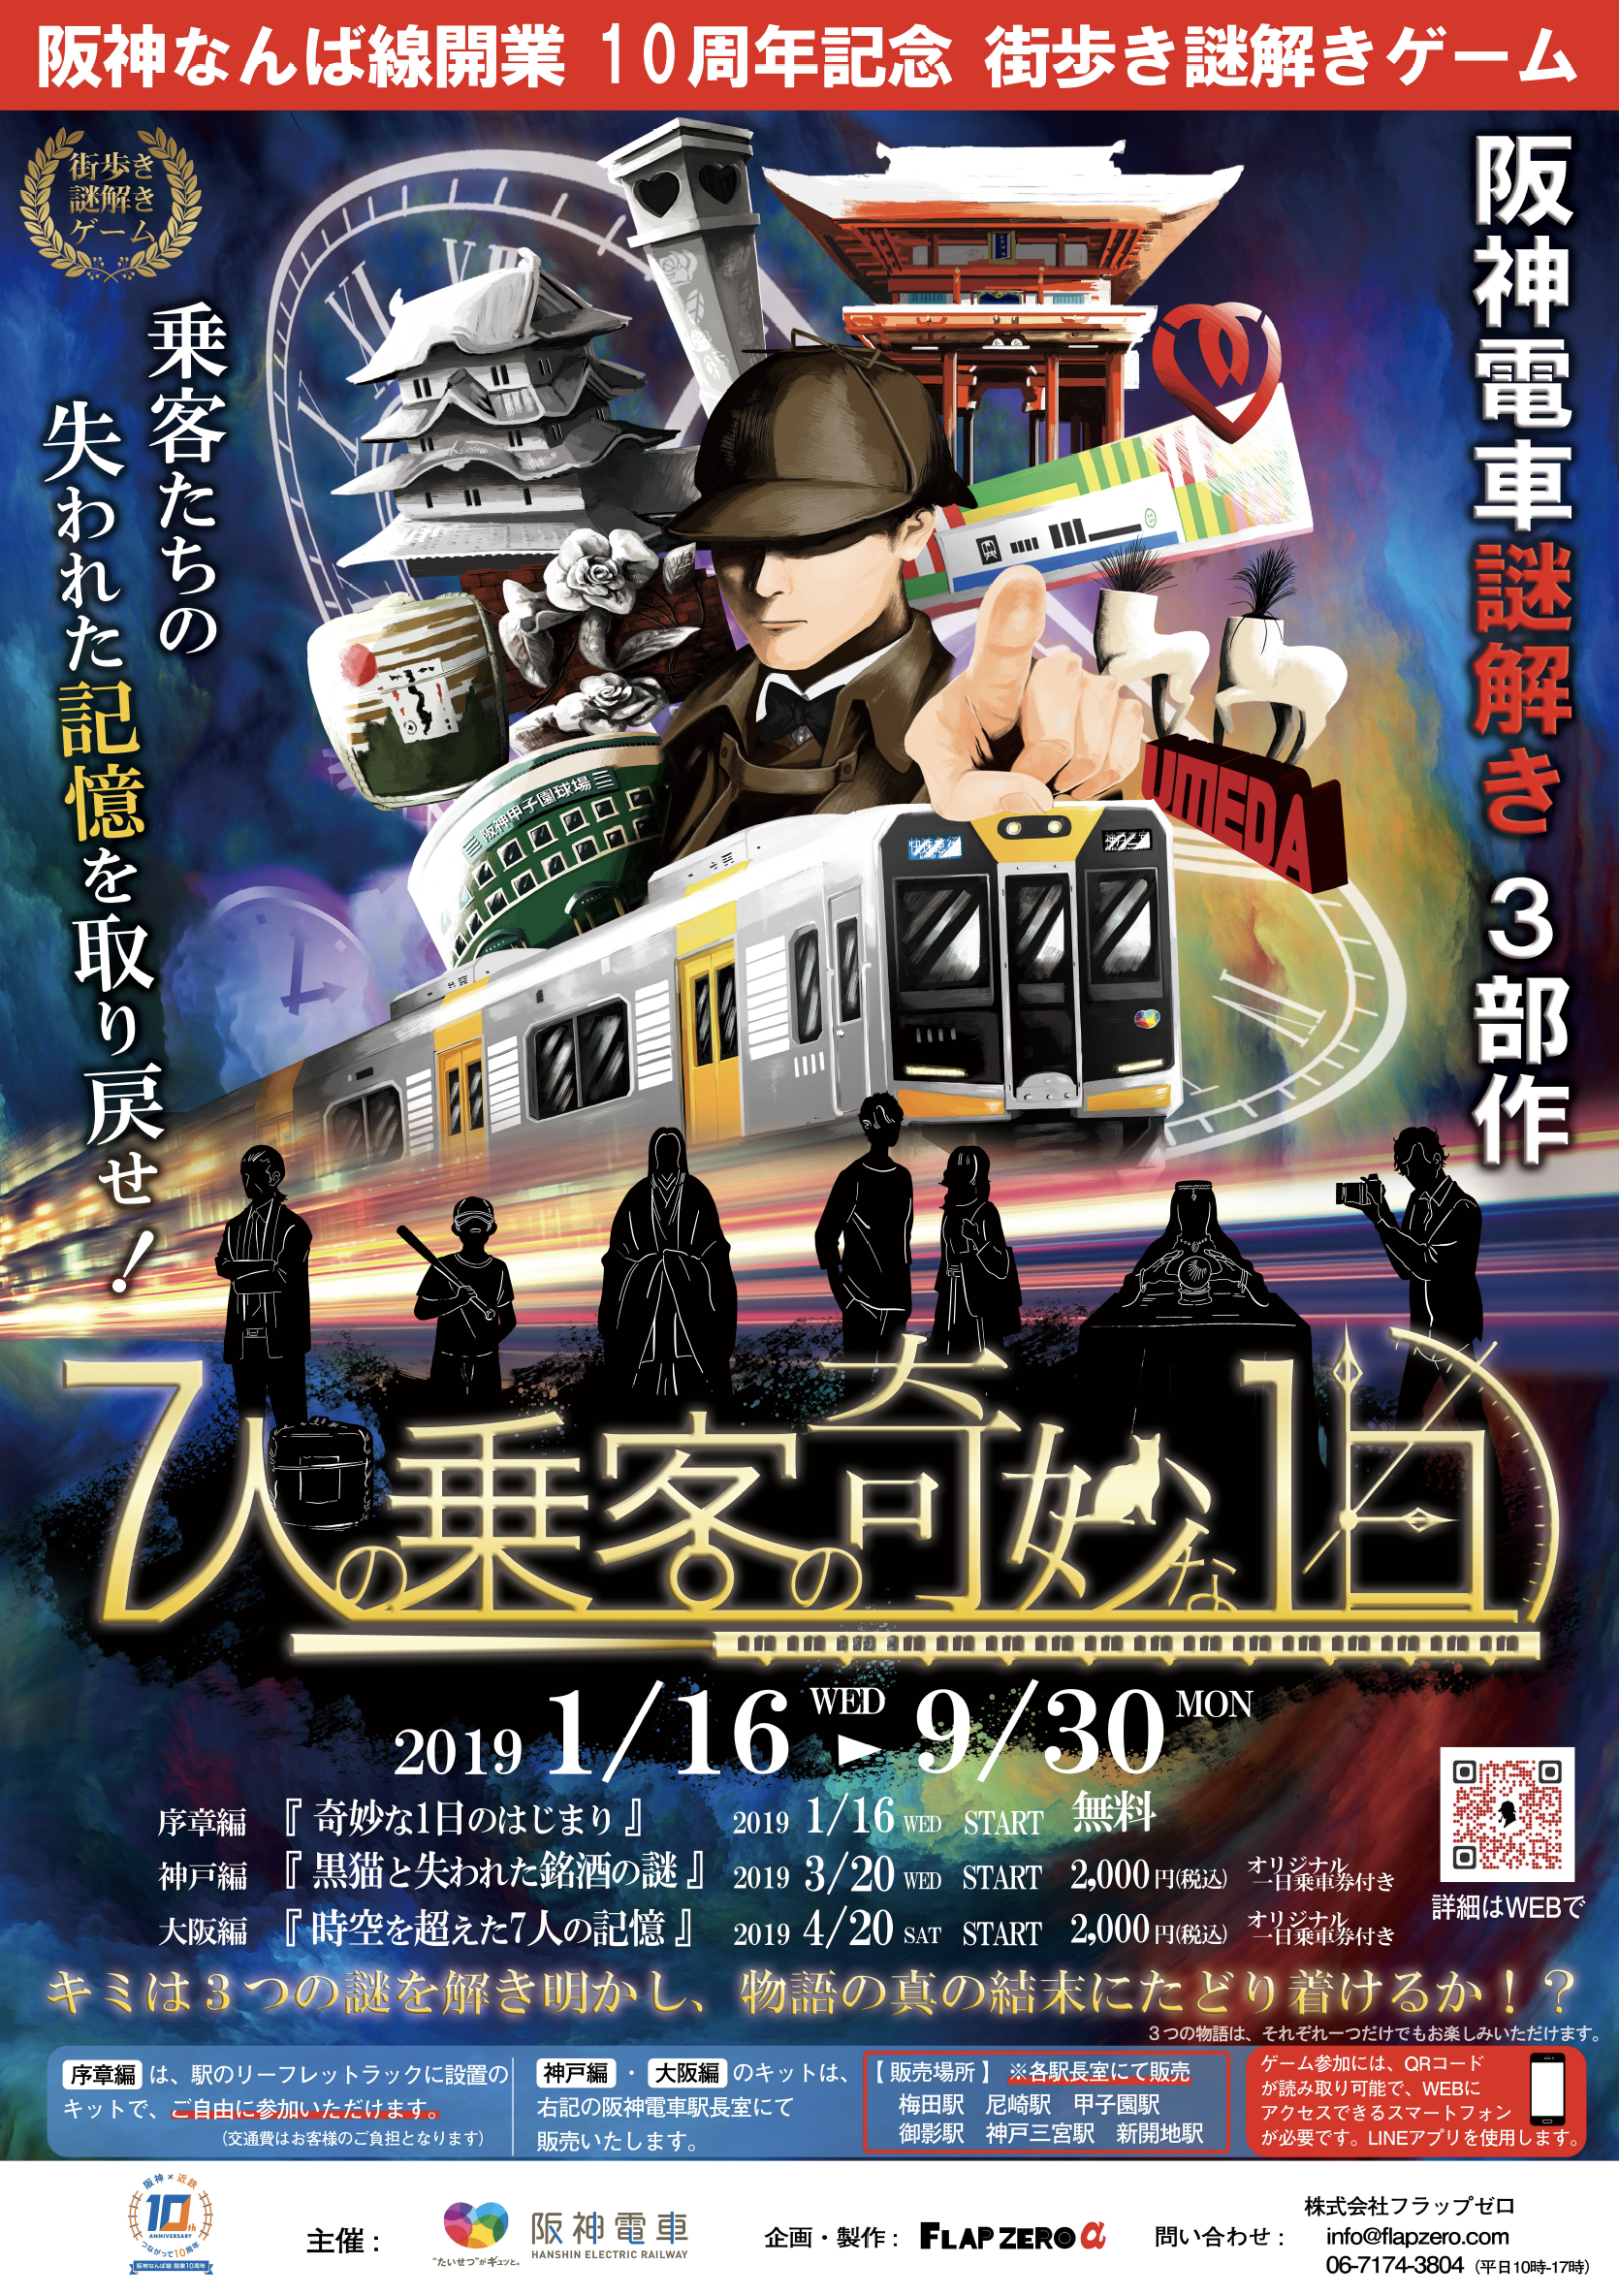 19 1 16 19 9 30 阪神電車 リアル謎解きゲーム開催 ７人の乗客の奇妙な１日 謎解きゼペッツ